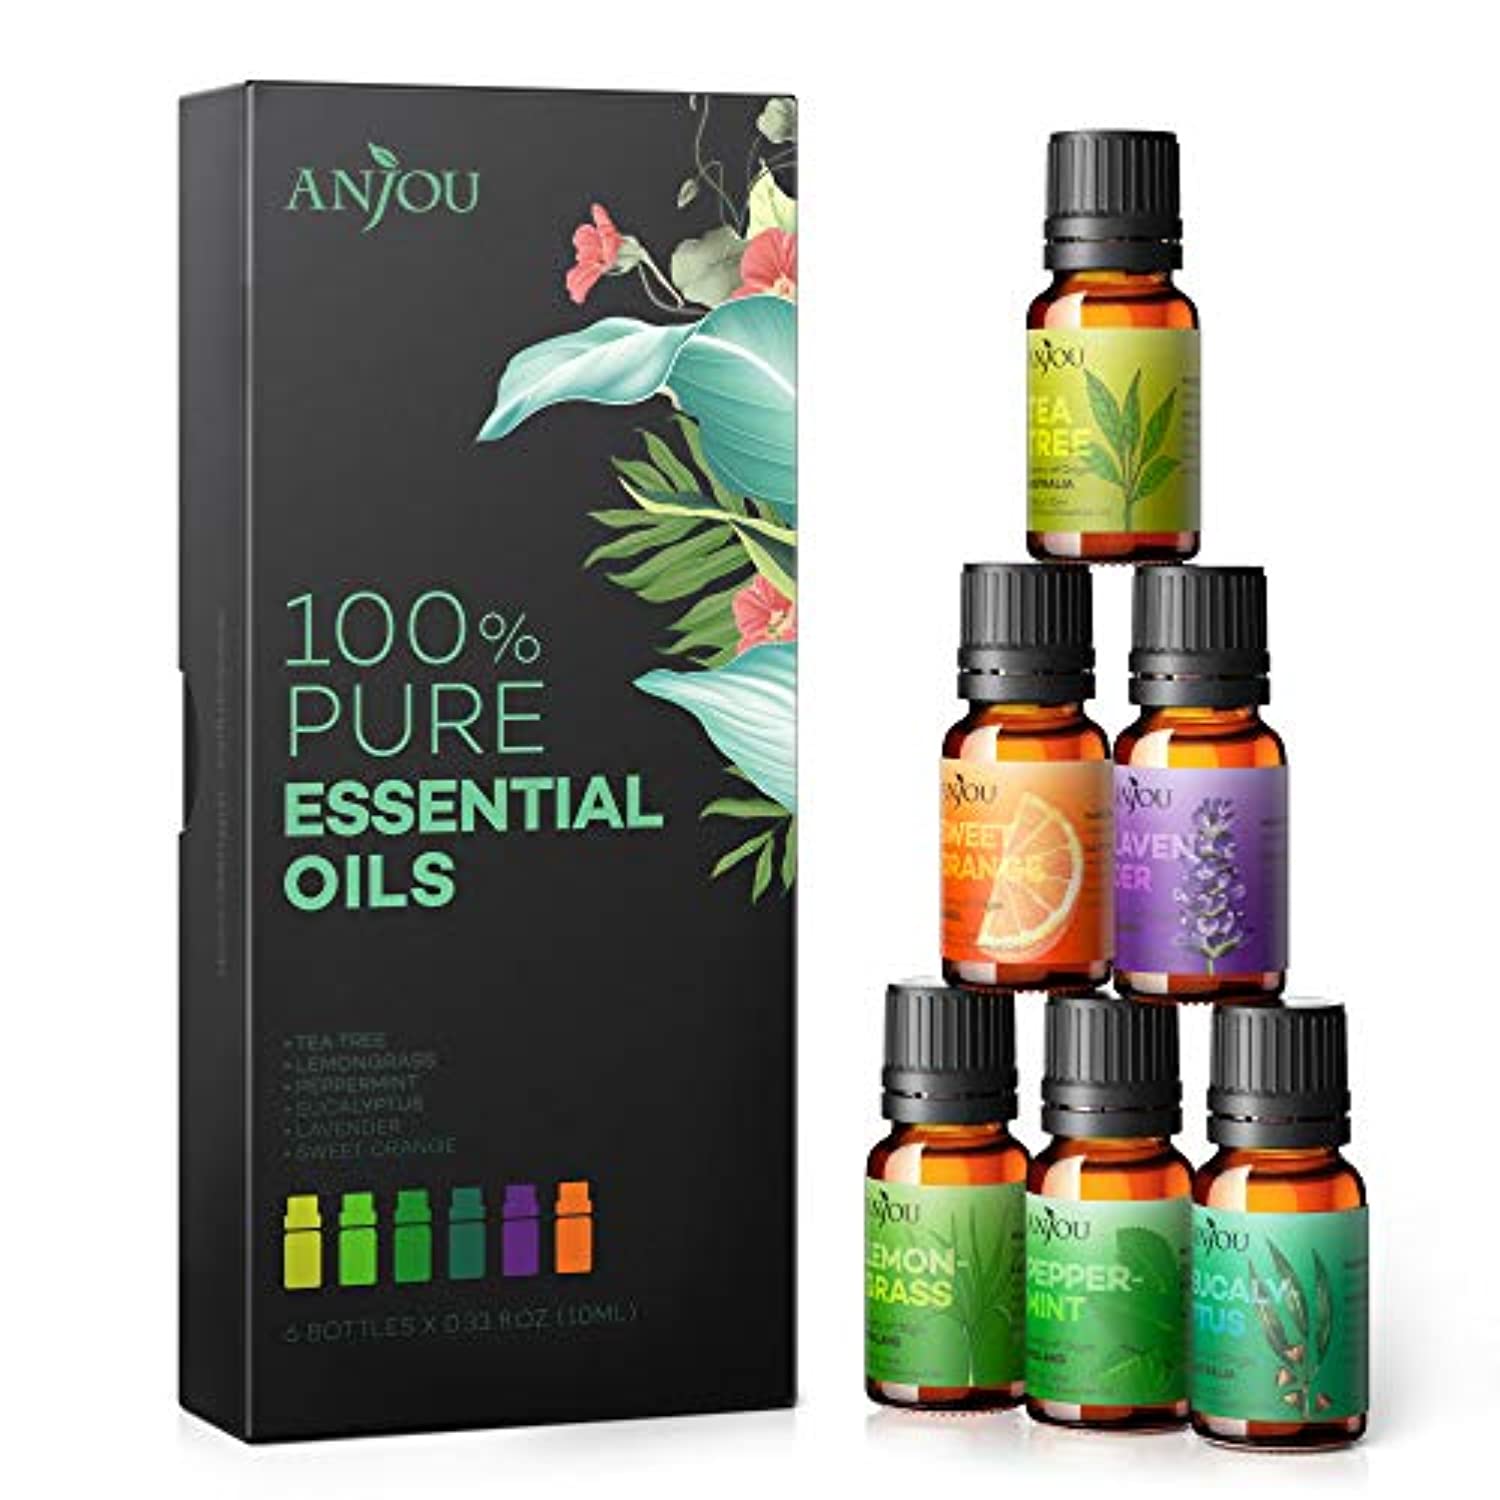  Folkulture Juego de 6 aceites esenciales para difusor, difusor  de aromaterapia, aromas de aceite para el hogar, bálsamo de salvia blanca,  madera de cedro, naranja, té verde, sal de océano y